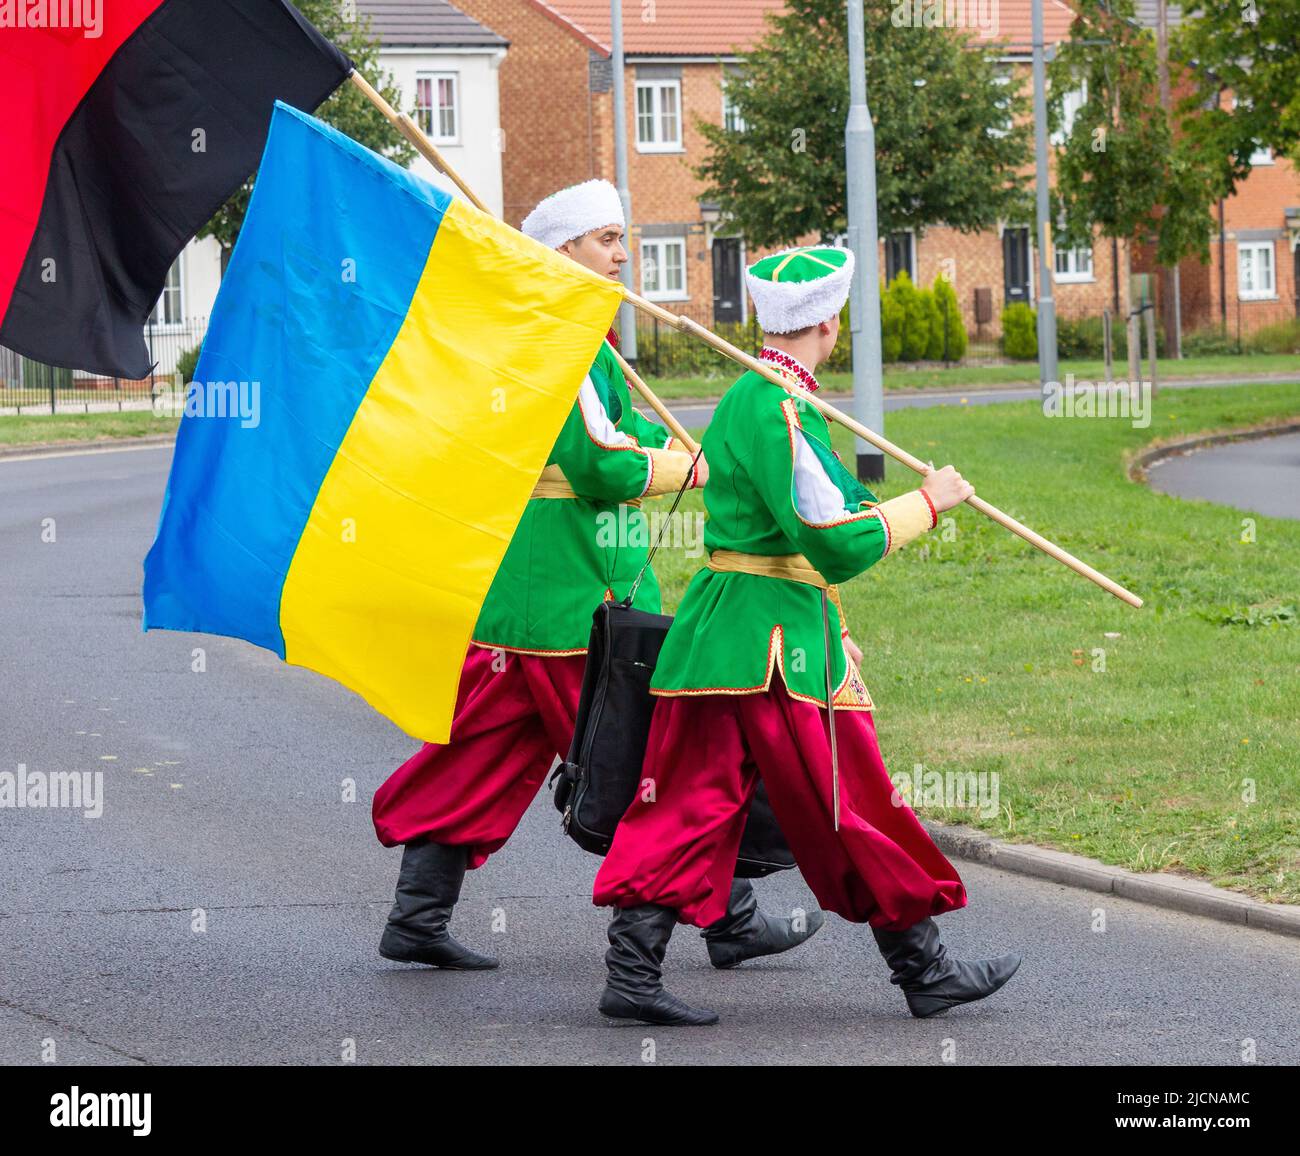 Männer aus der ukrainischen Tanzgruppe in traditioneller Kleidung. Eine Flagge der Ukraine und eine Flagge der ukrainischen Aufständischen Armee (schwarz und rot). Stockfoto